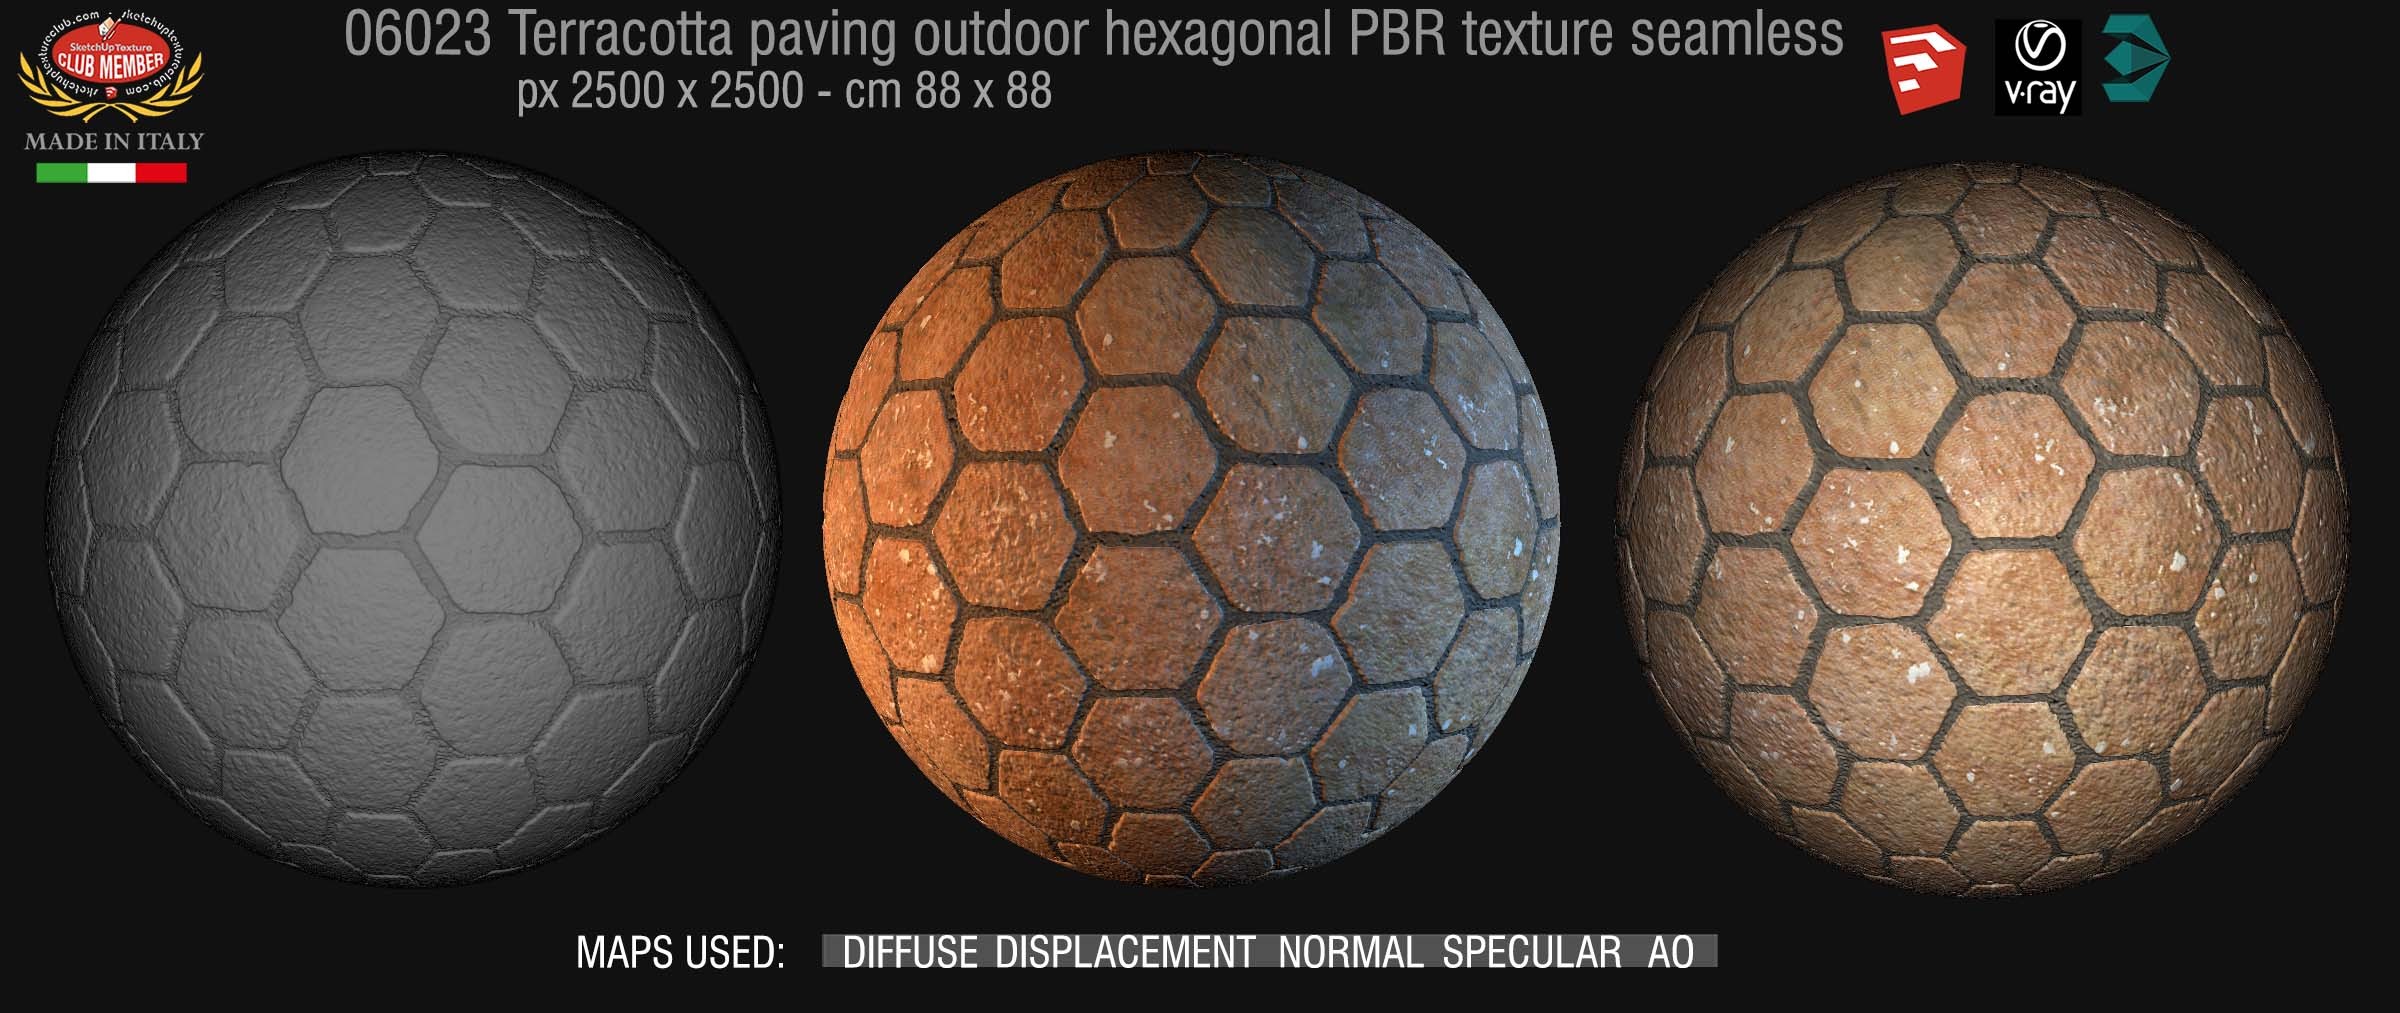 06023 Terracotta paving outdoor hexagonal PBR texture seamless DEMO